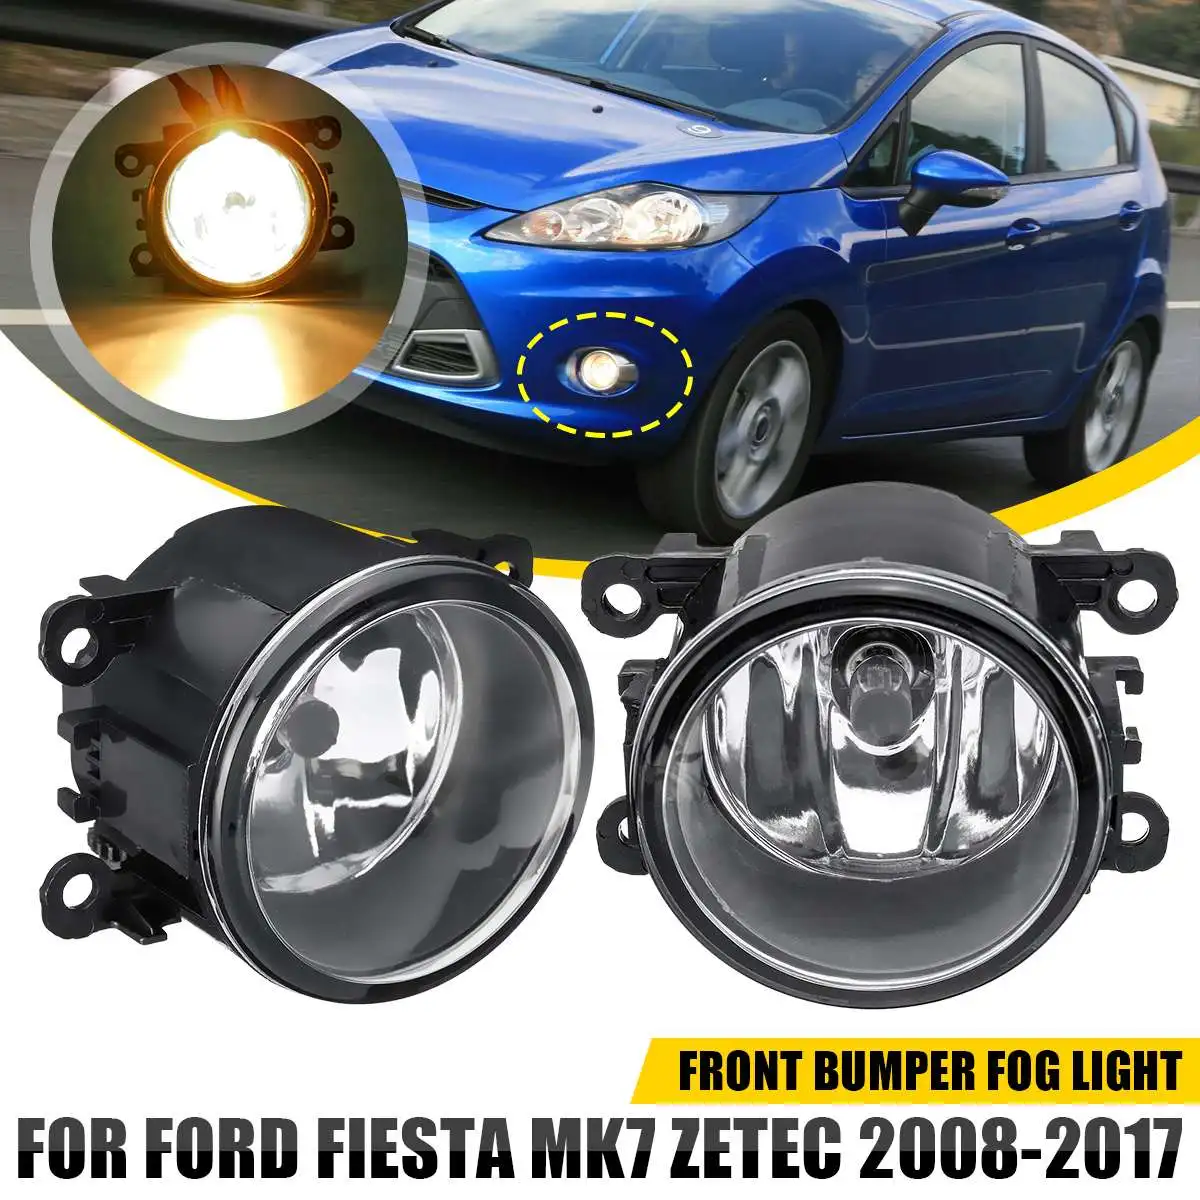 Faros antiniebla delanteros LED para coche, Bombilla H11 para Ford Fiesta MK7, Zetec, Focus, Acura c-max, Nissan Sentra